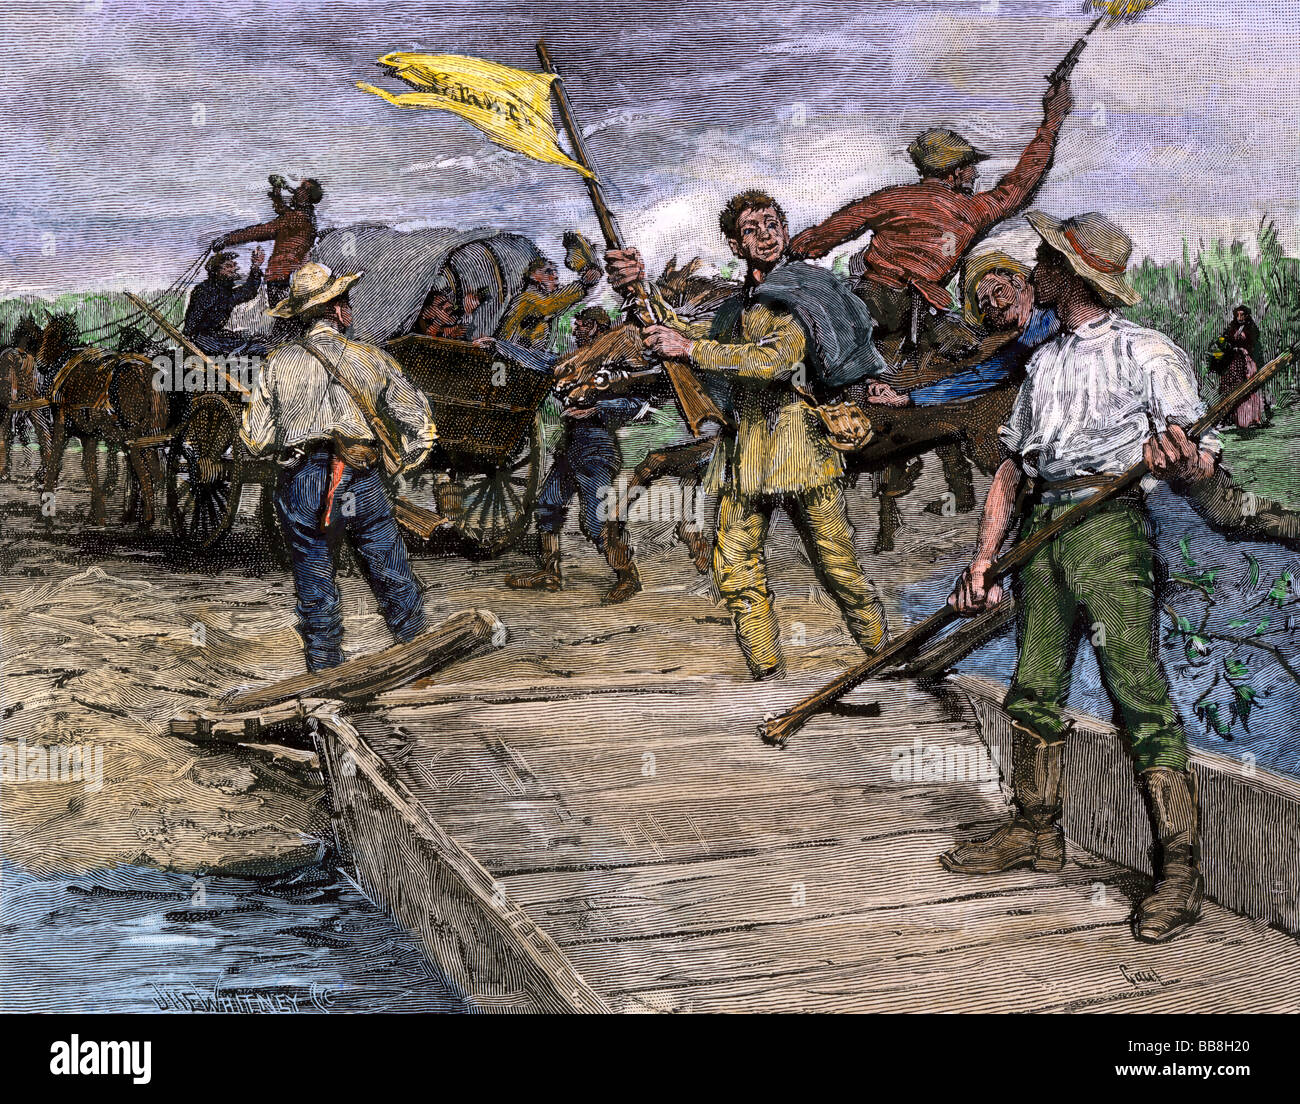 Pro-schiavitù forze traghettare gli elettori del Missouri a Kansas shore a votare contro sporco libero 1850s. Colorate a mano la xilografia Foto Stock